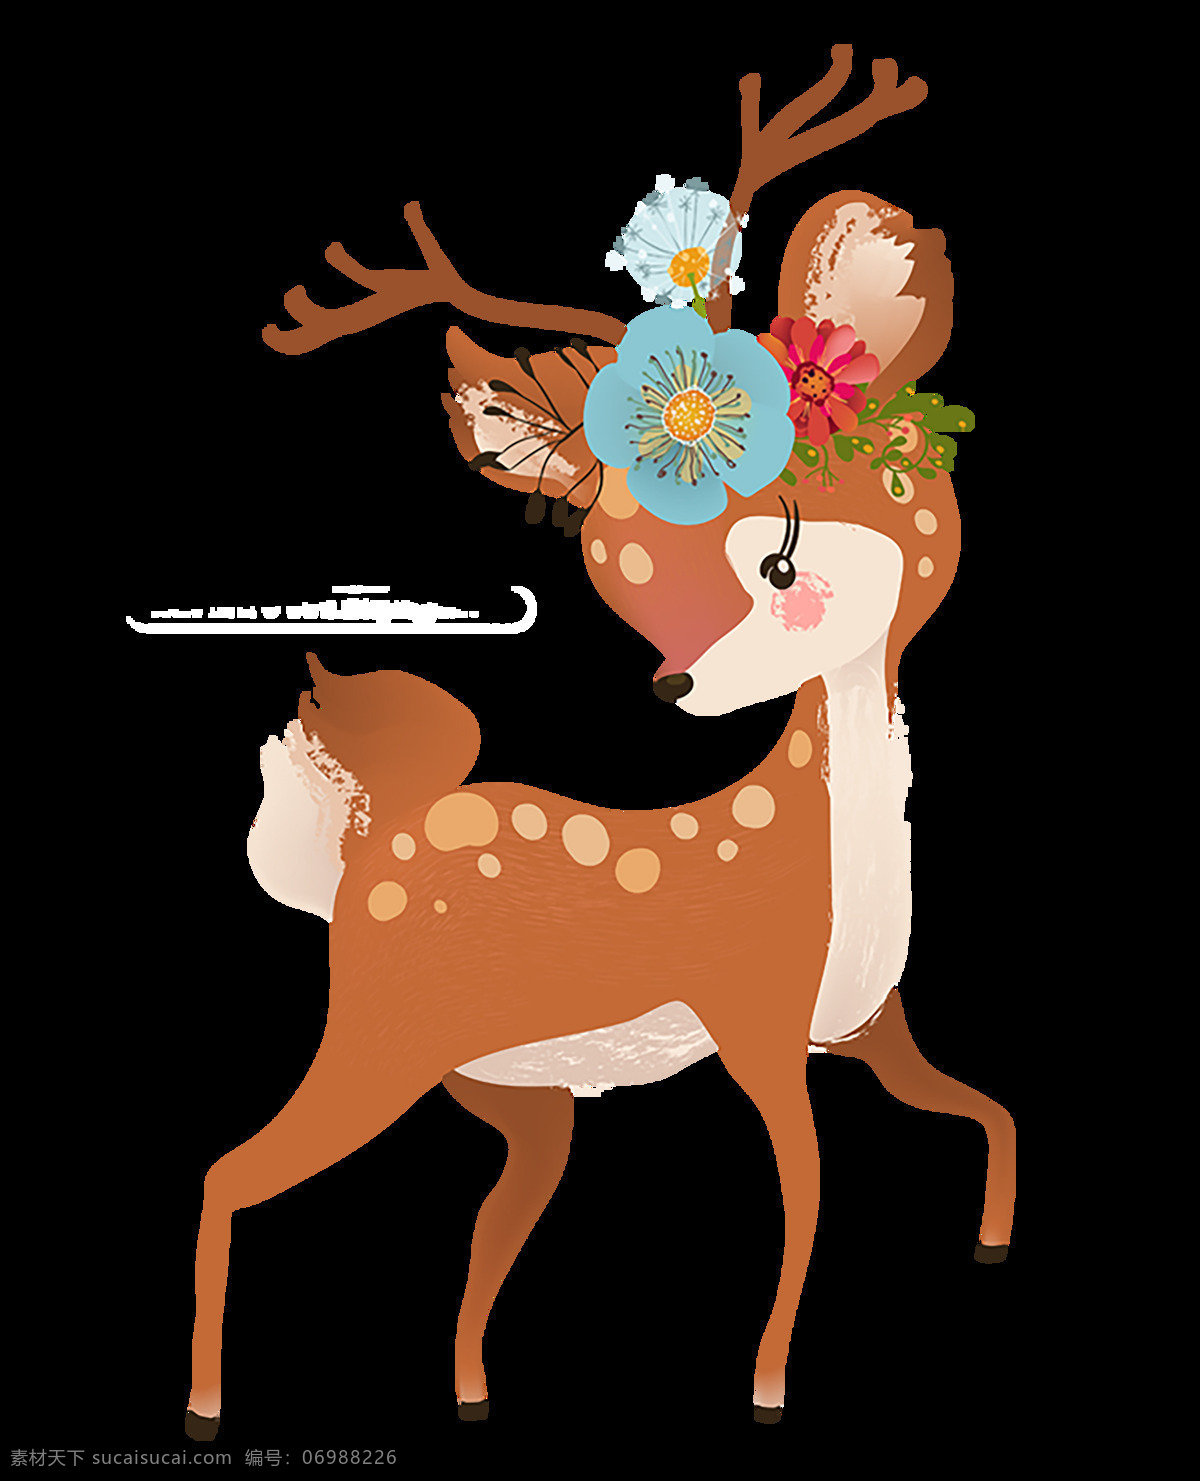 驯鹿 冬天 圣诞节数字 圣诞节 西方传统节日 节日装饰 装饰品